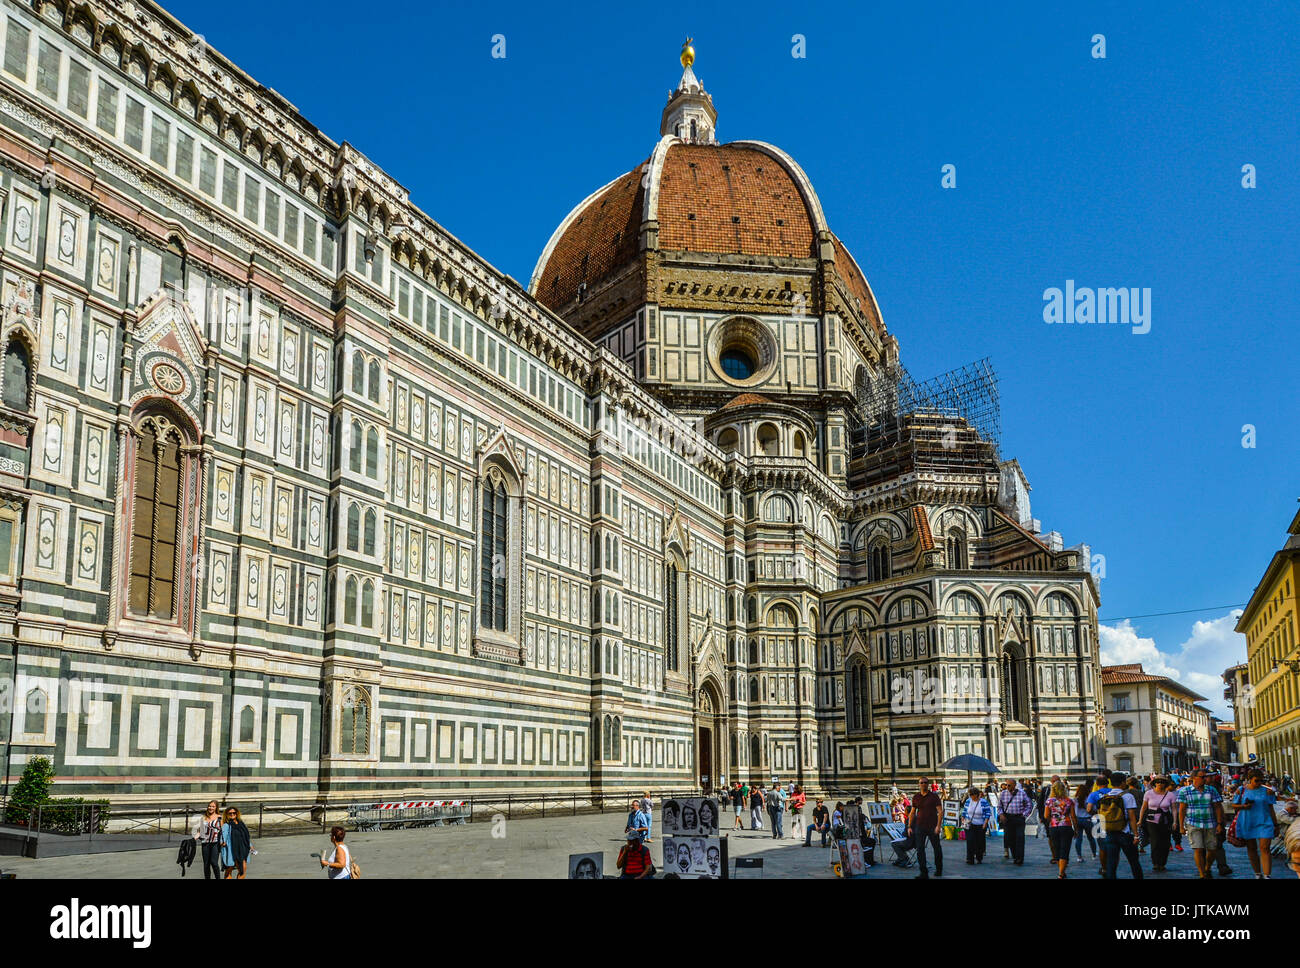 Santa Maria del Fiore, la cattedrale o Duomo di Firenze in un caldo pomeriggio estivo shot dal lato con i turisti e gli artisti di strada Foto Stock